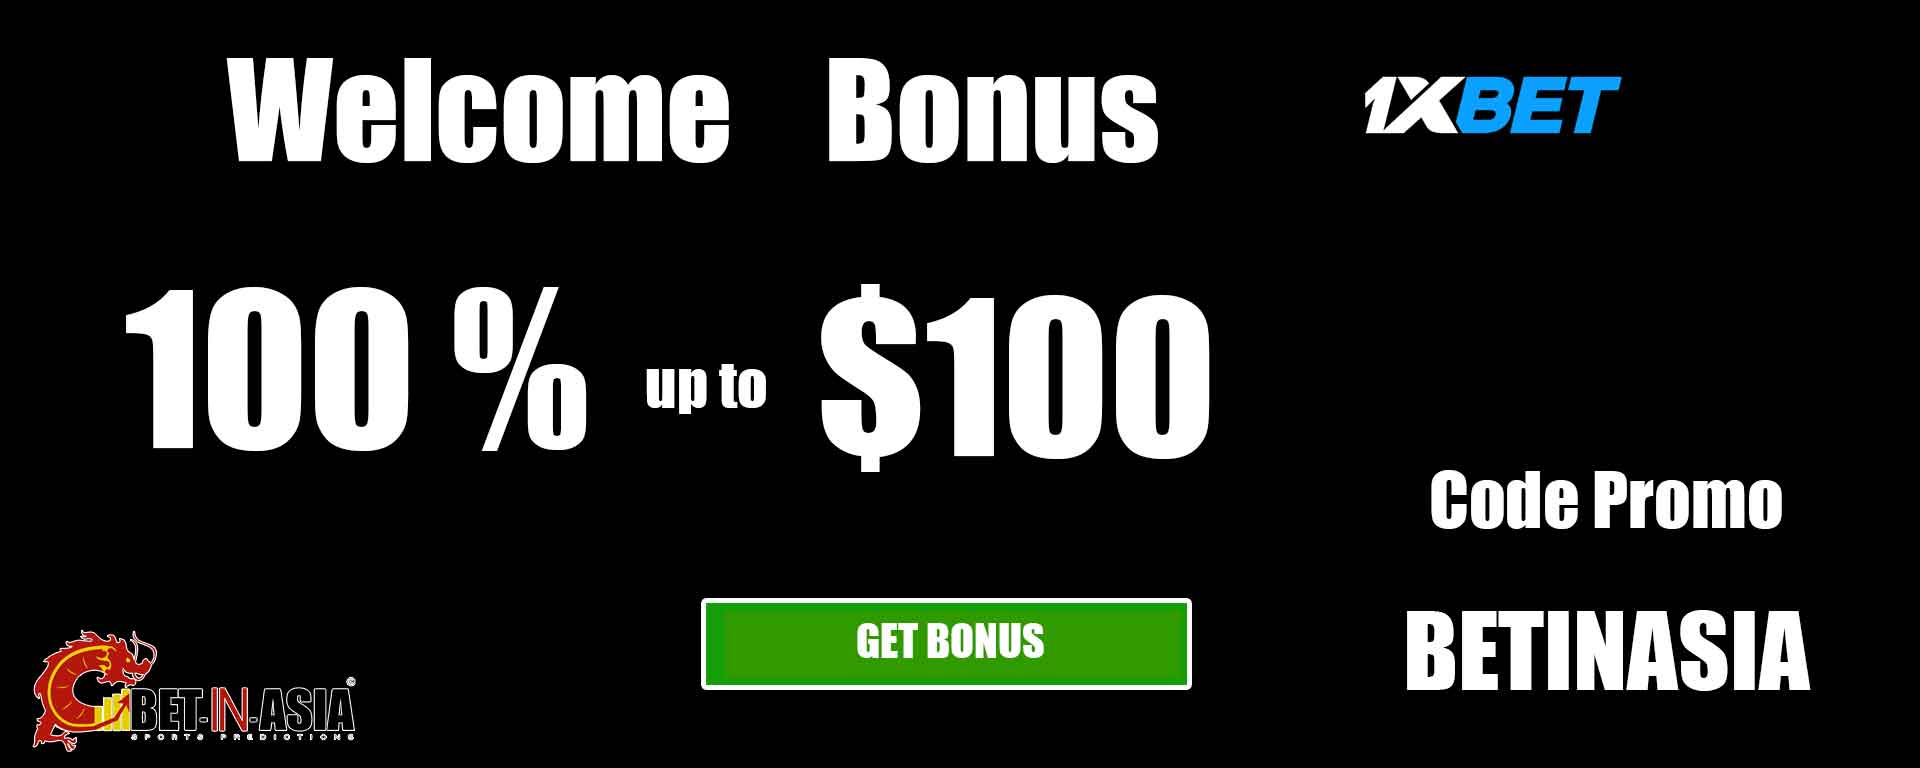 1xbet Asie welcome bonus 100 % on first deposit